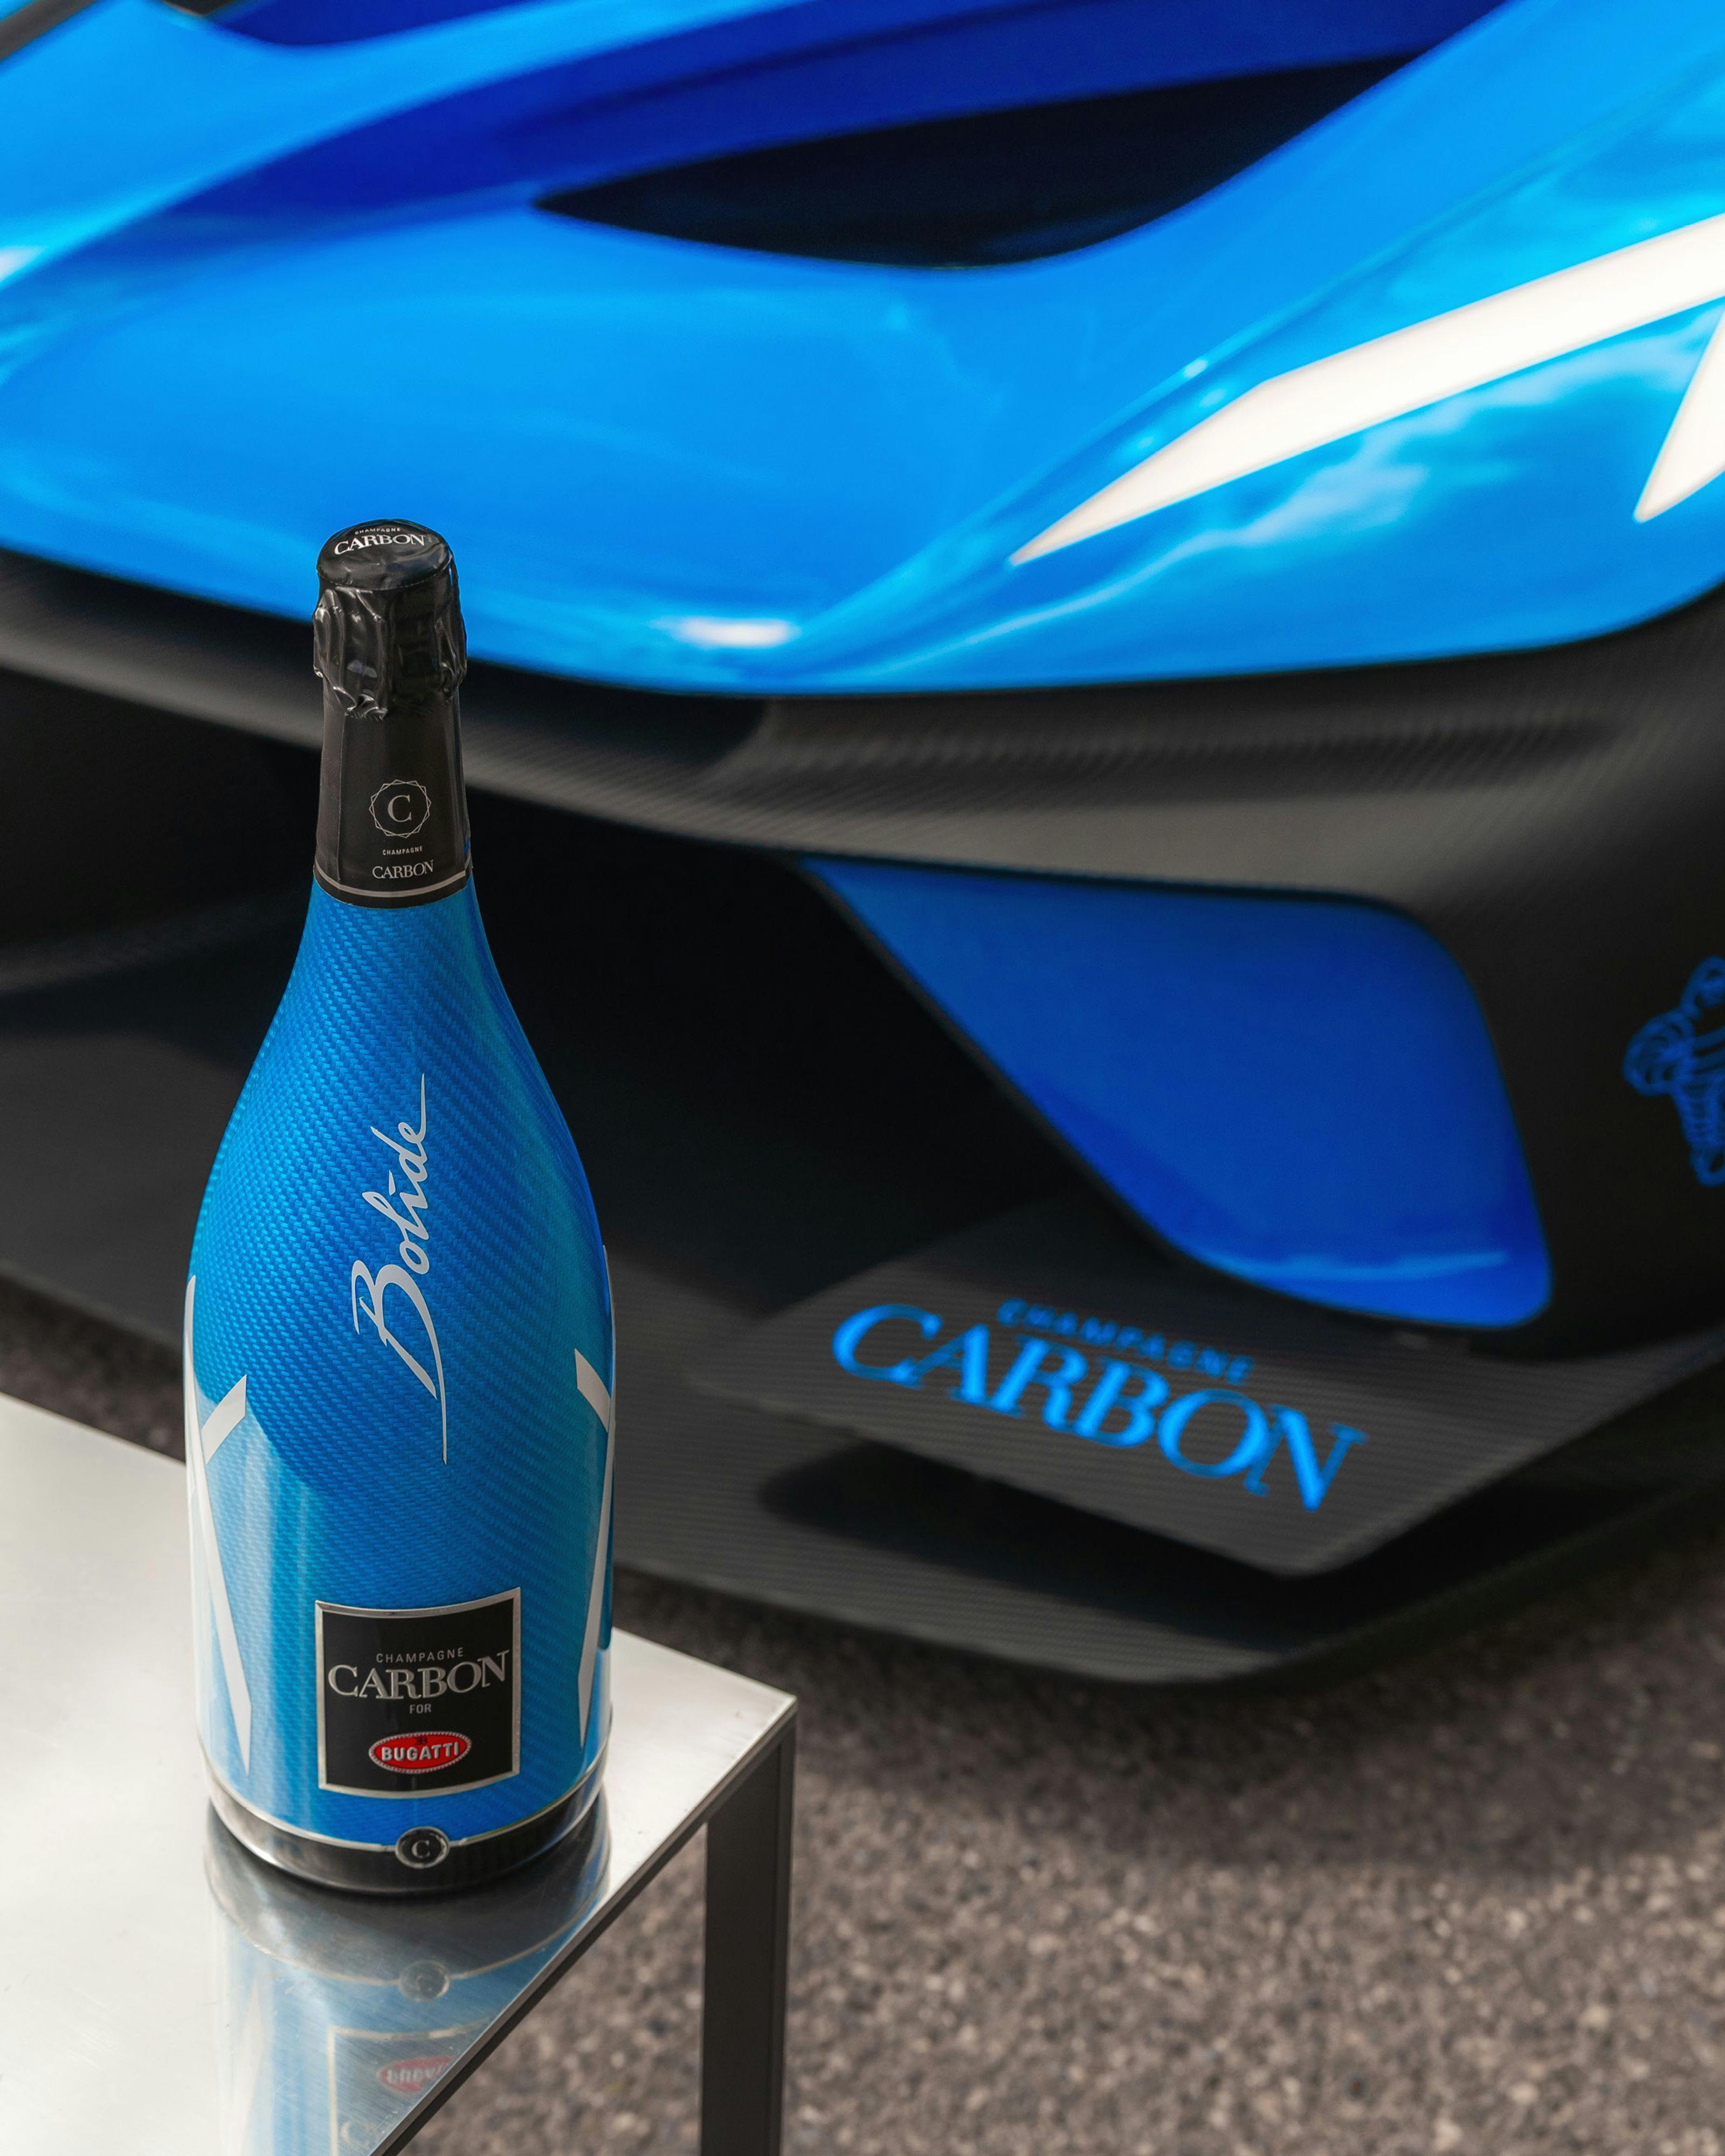 Bugatti dévoile la cuvée ƎB.03, une collaboration avec Champagne Carbon inspirée de la Bugatti Bolide